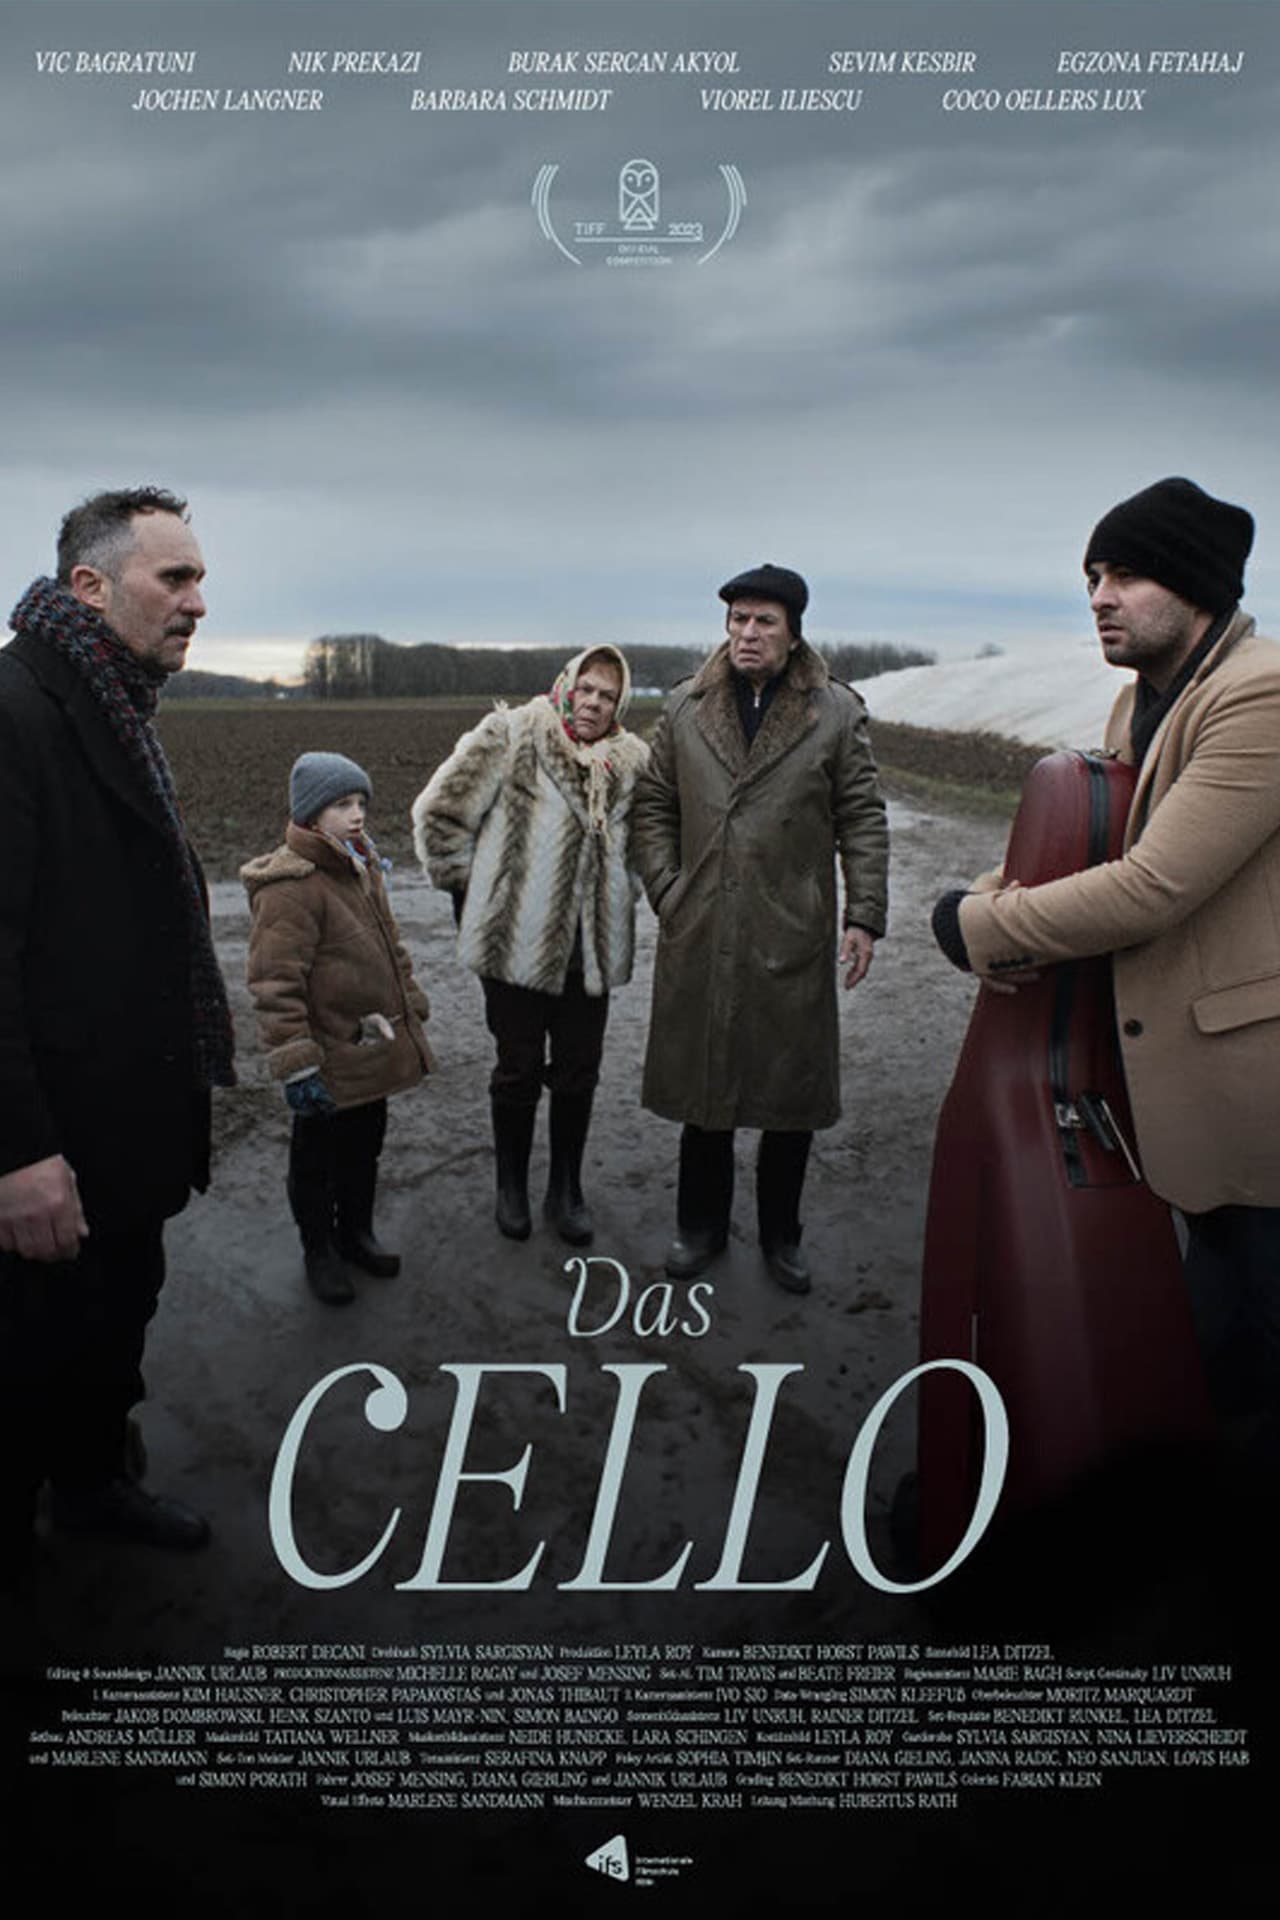 Das Cello